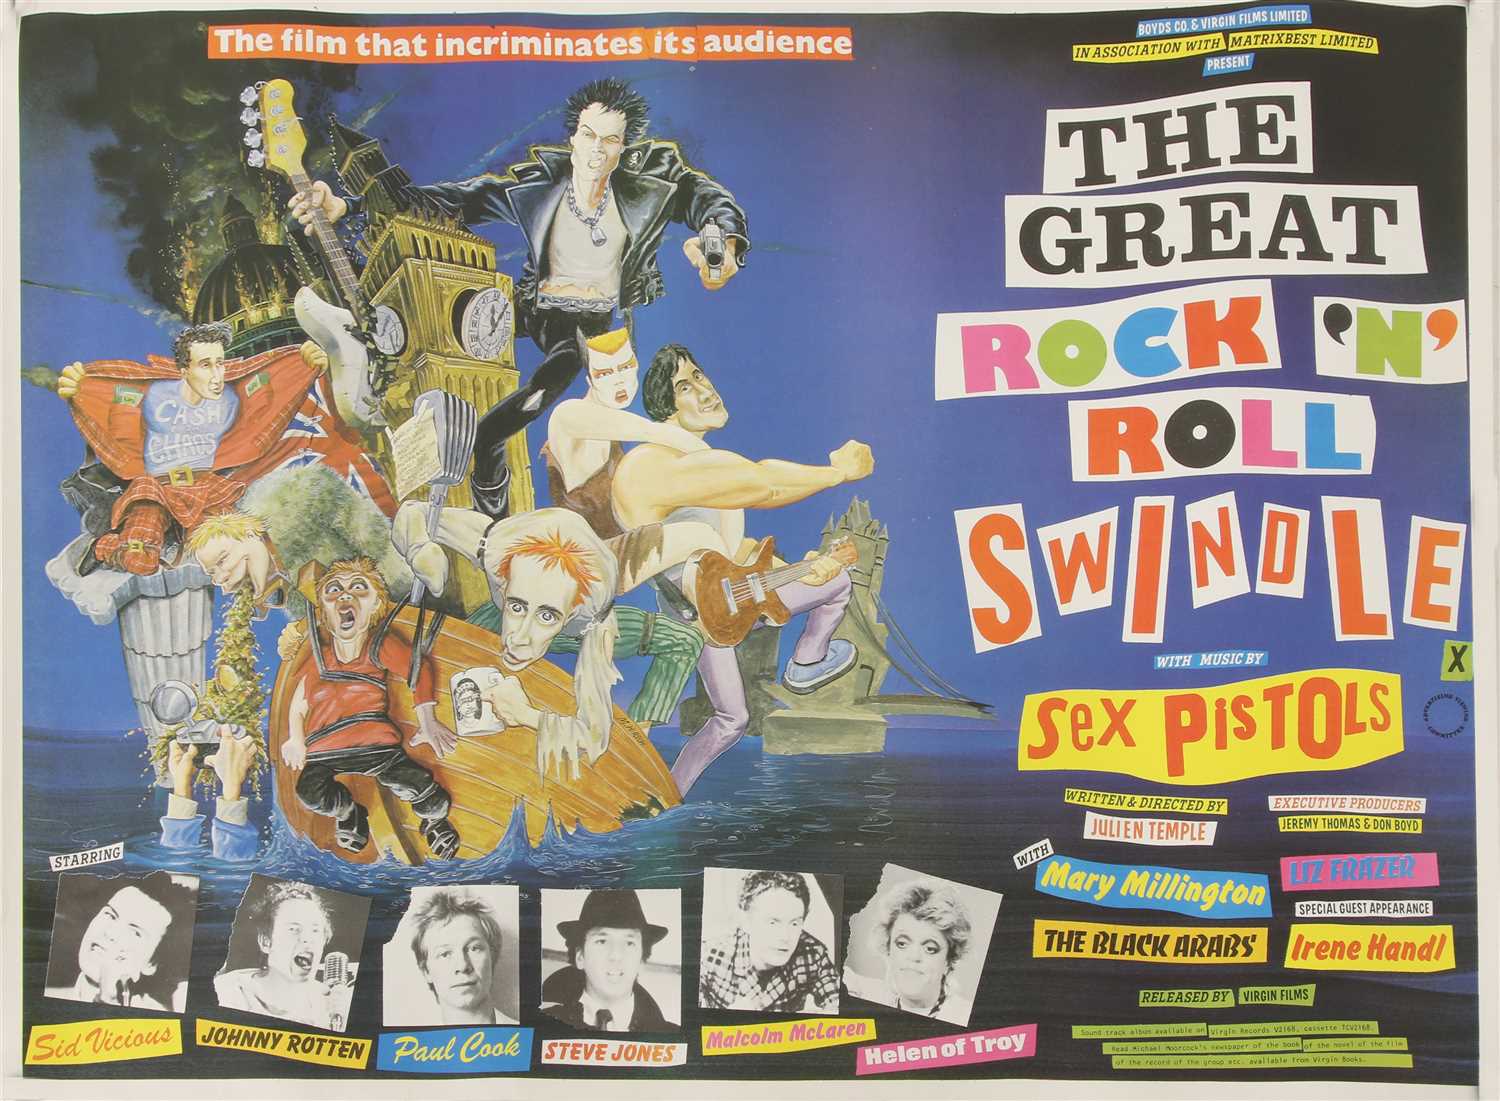 'THE GREAT ROCK 'N' ROLL SWINDLE',